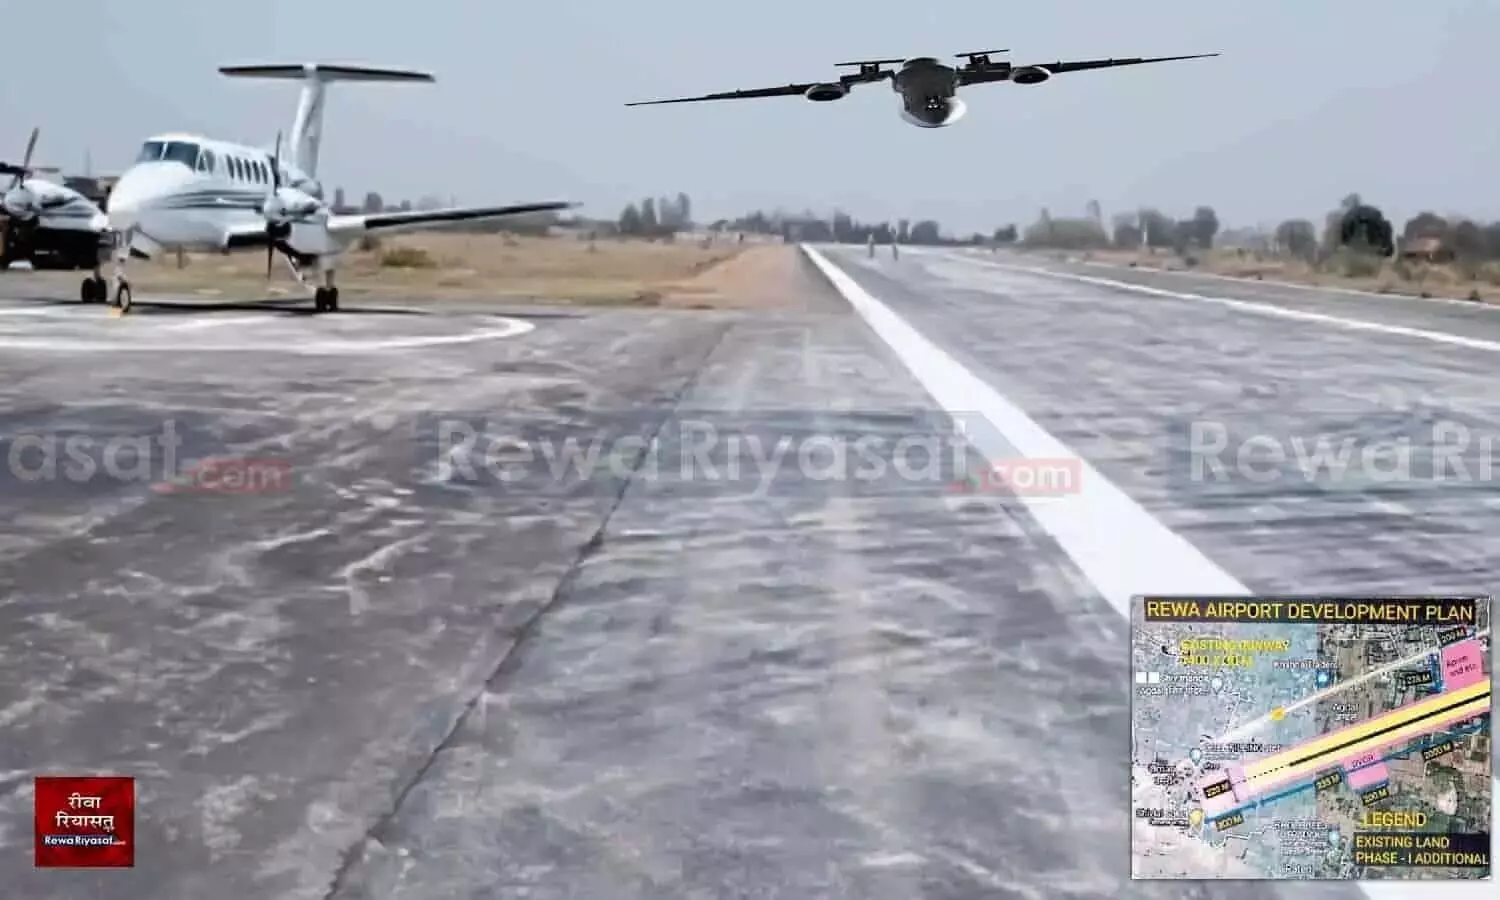 Rewa Airport को राज्य सरकार 99 सालों की लीज पर AAI को सौंप रही! पायलट ट्रेनिंग देने वाली कंपनी Falcon का क्या होगा?